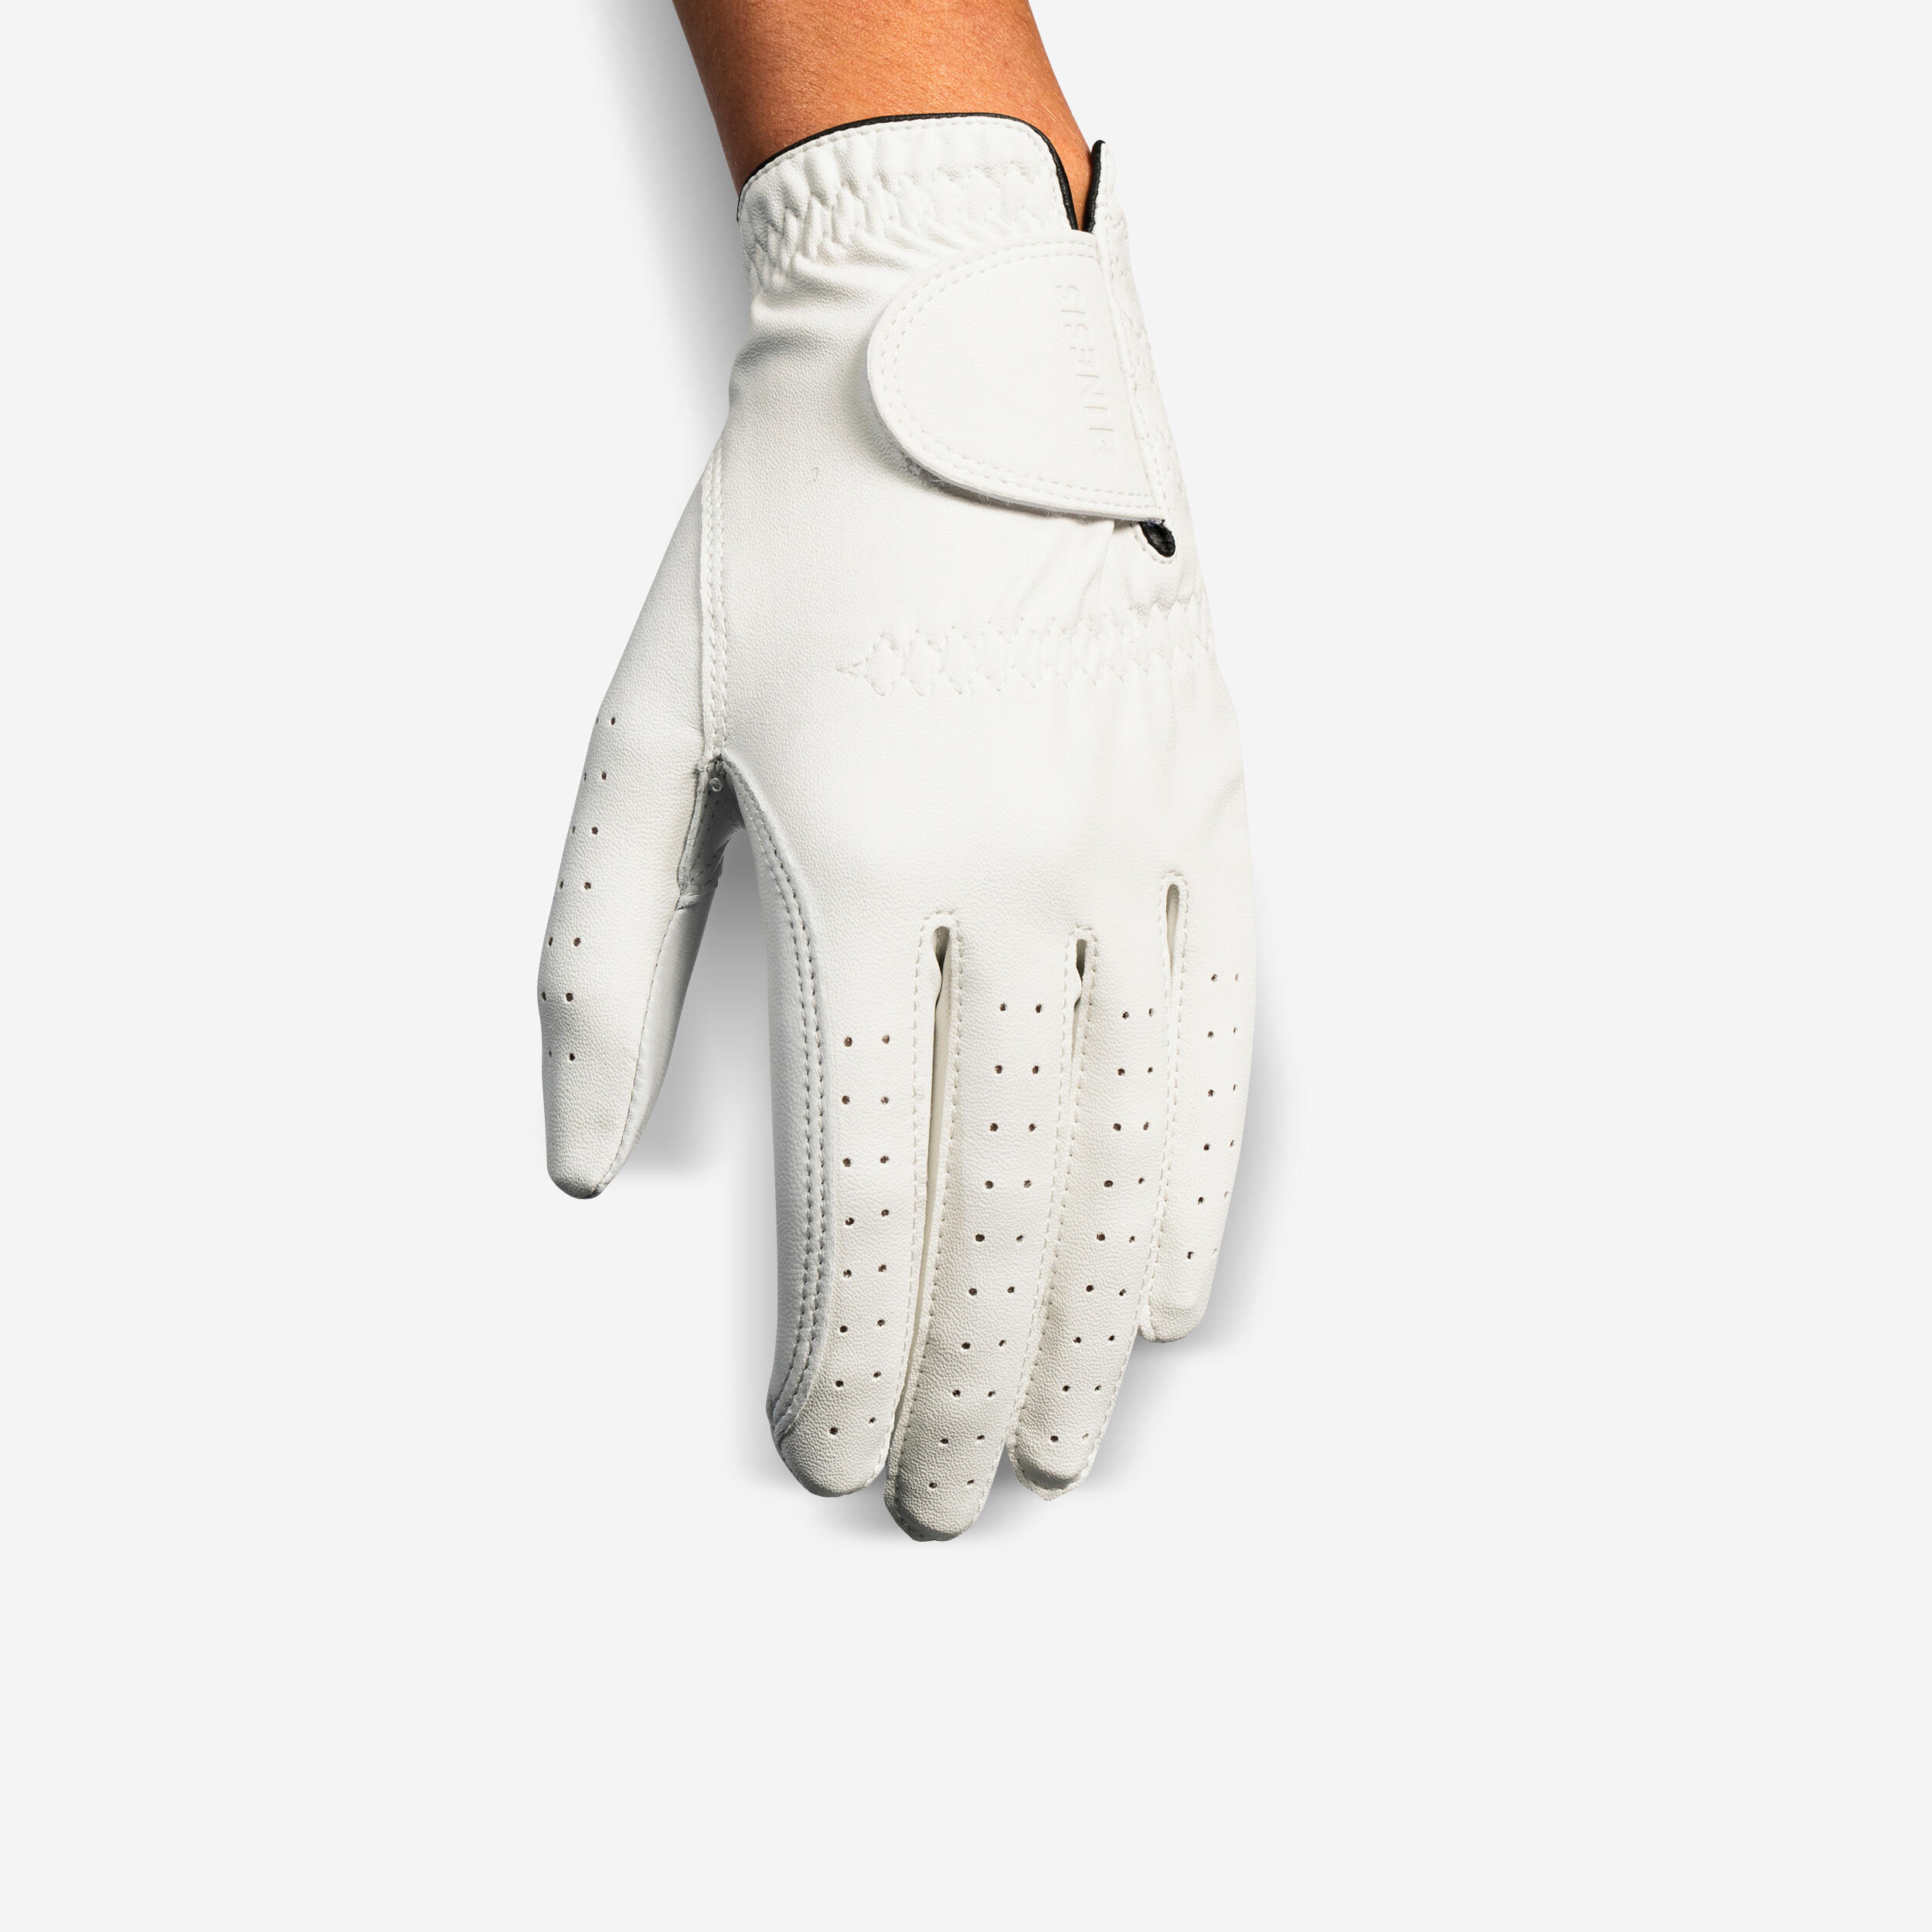 Gant de golf pour droitière femme - Soft 500 blanc - INESIS